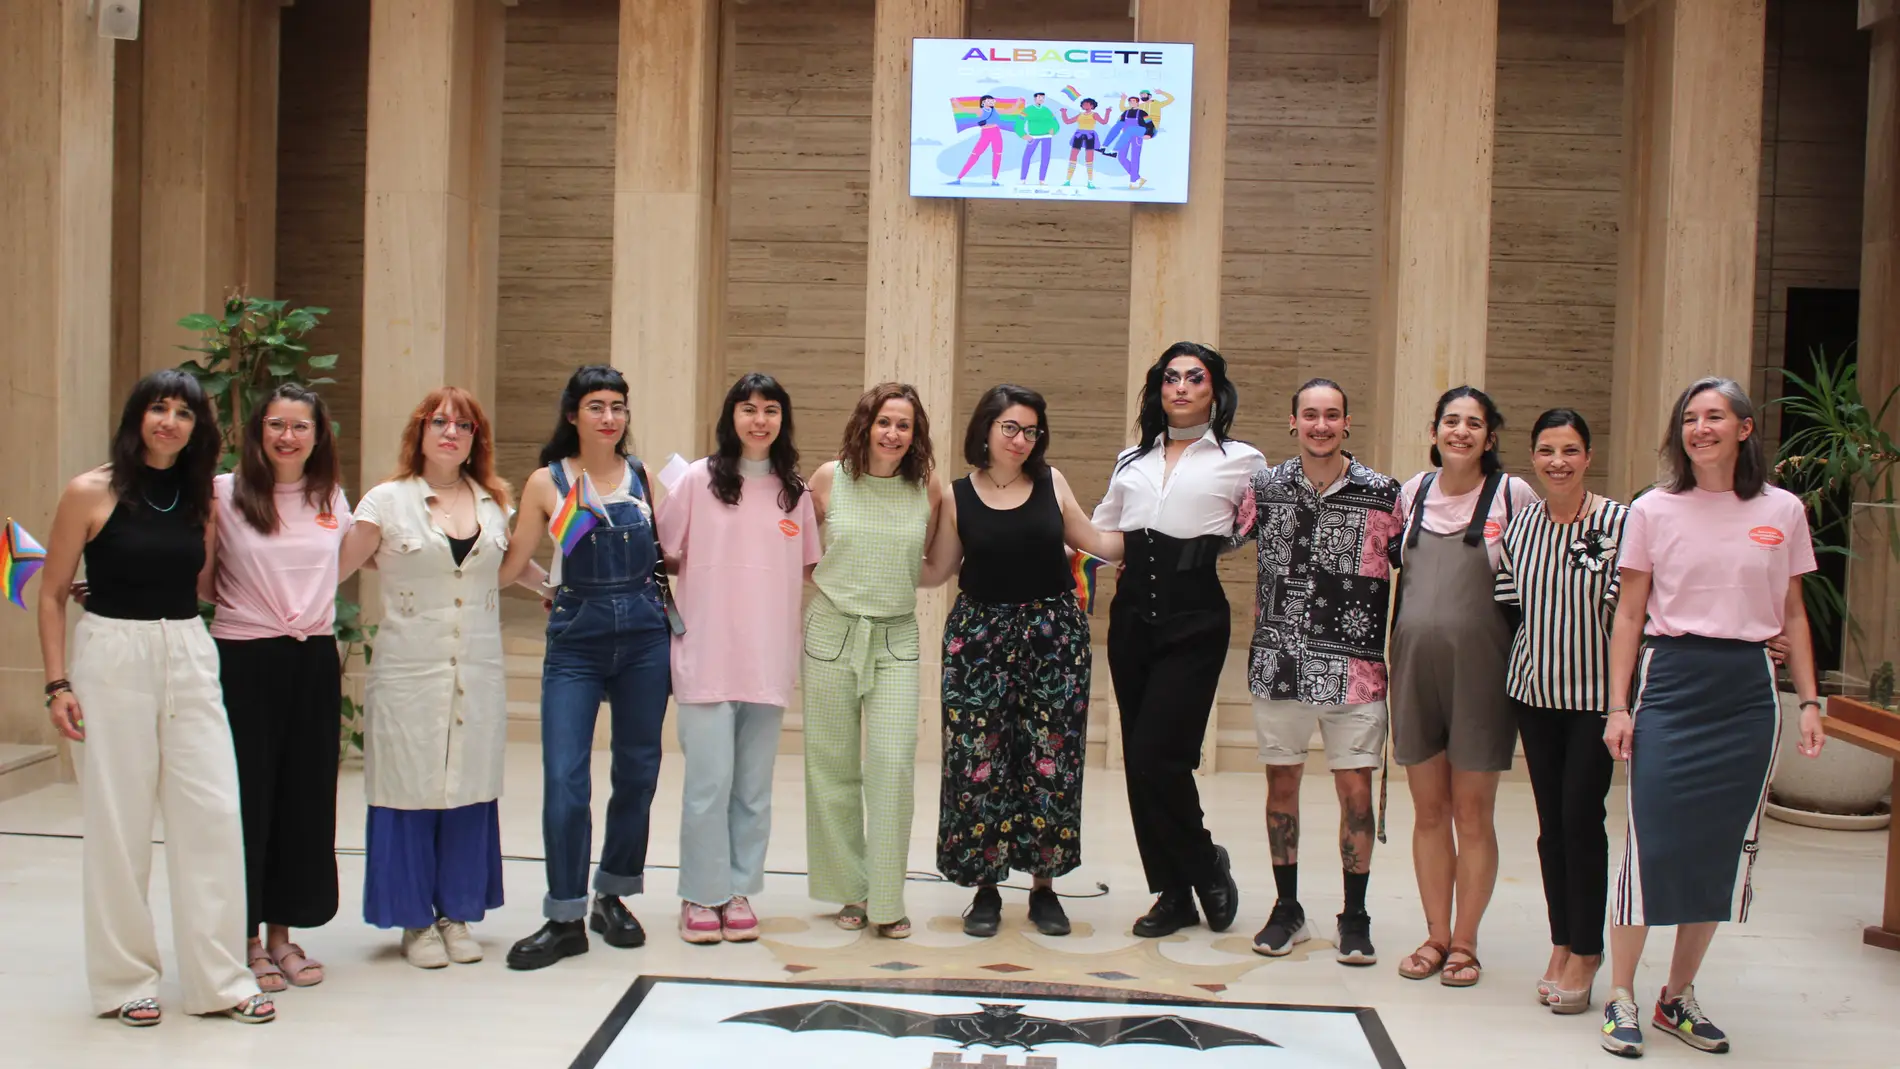 'Albacete orgullosa de ti', lema para conmemorar el Día del Orgullo